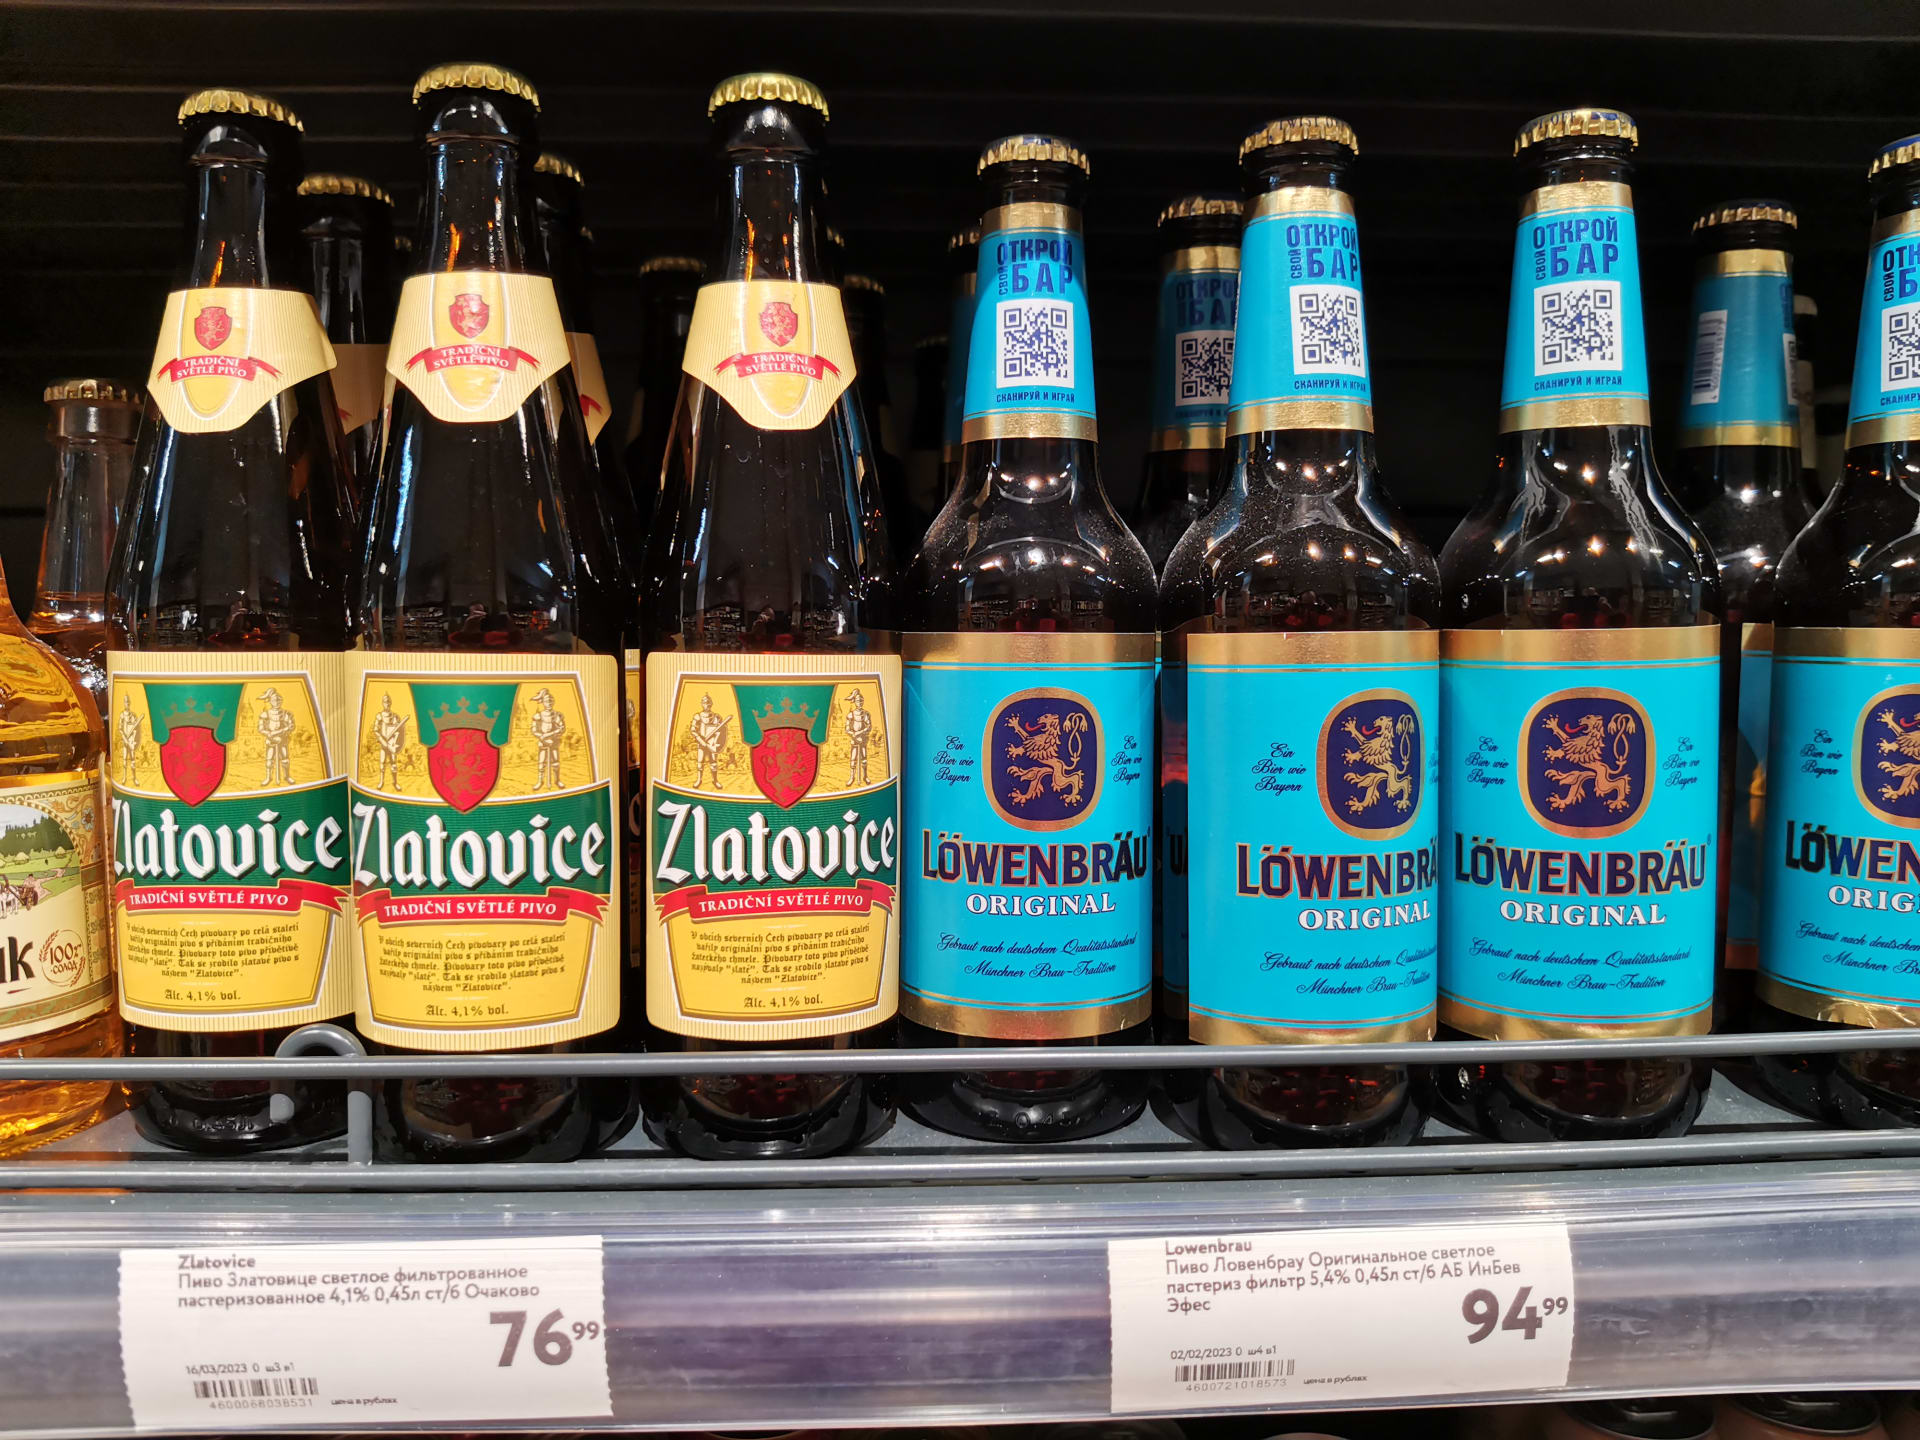 České pivo a další výrobky lze dodnes nalézt na pultech ruských supermarketů.